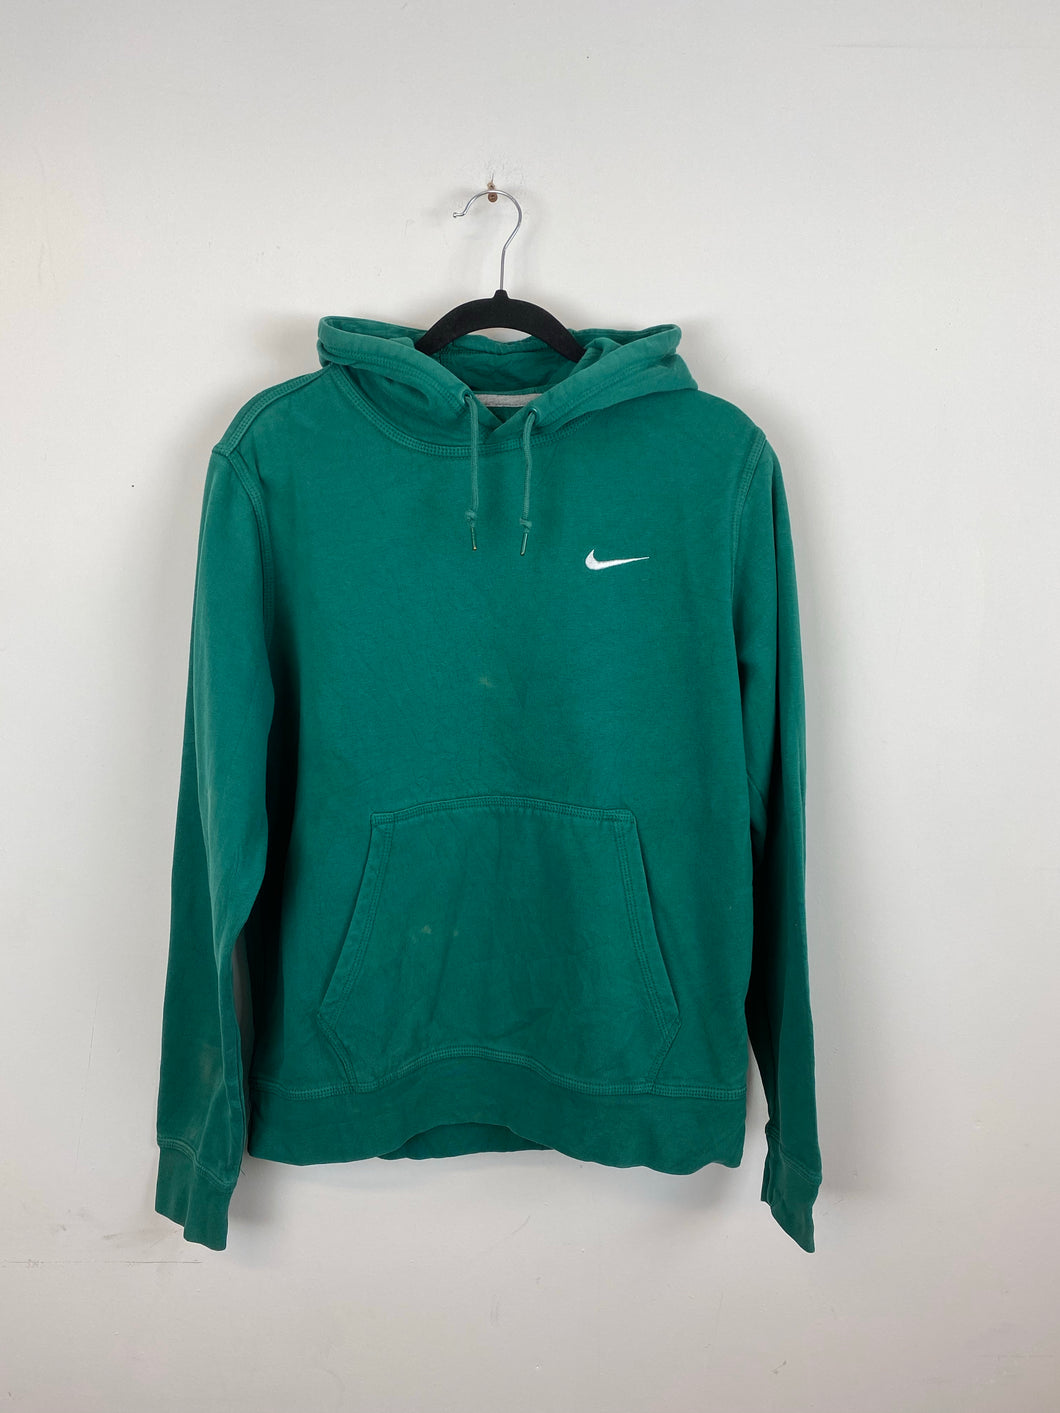 Teal Nike hoodie